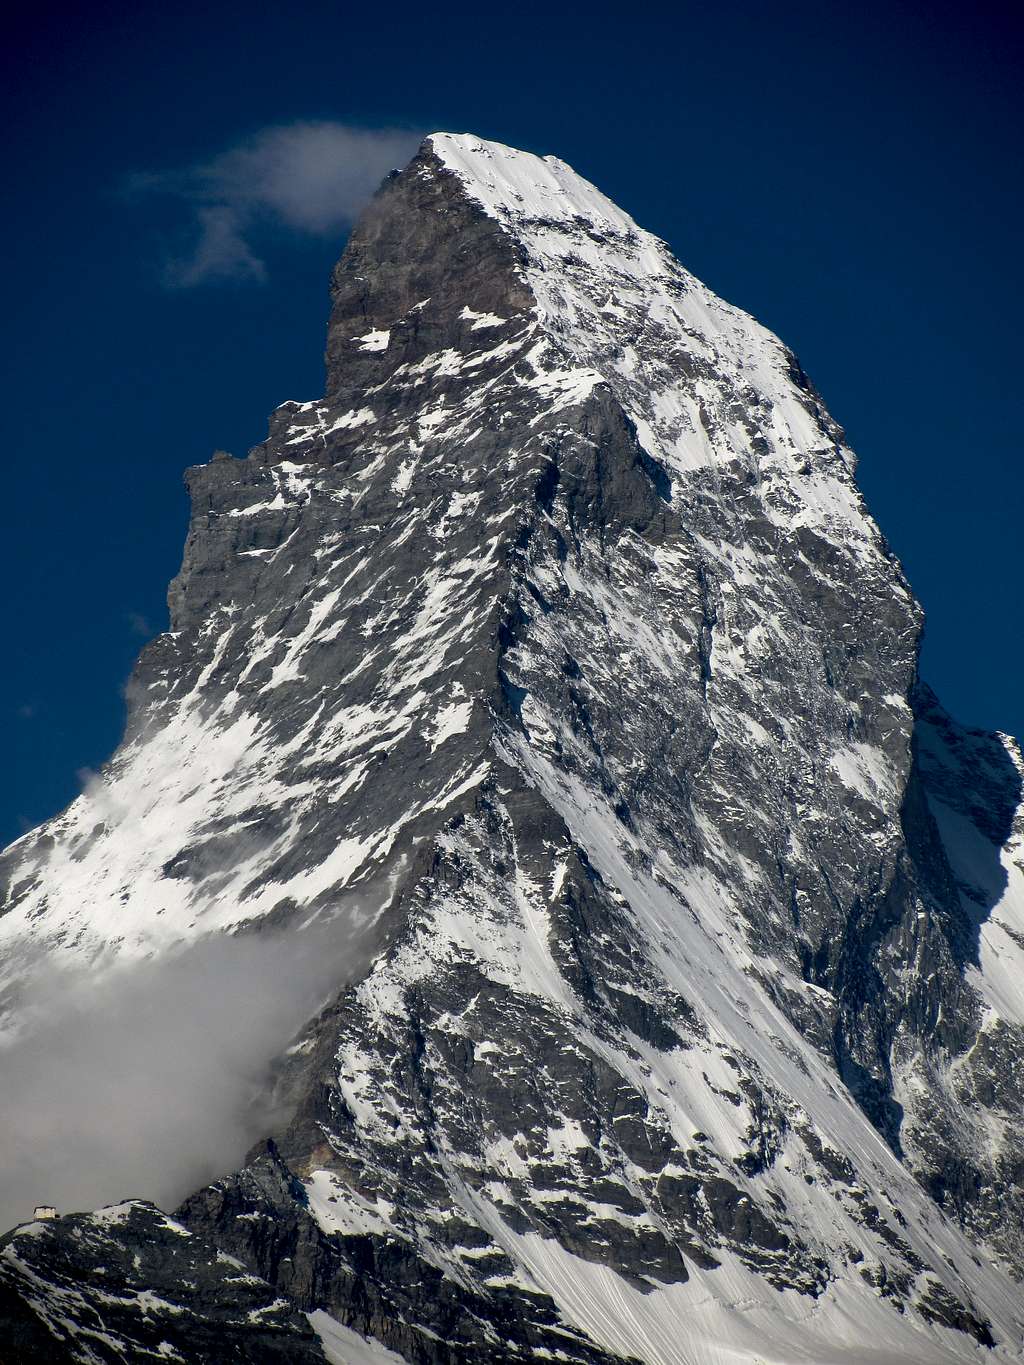 Matterhorn Hornli Ridge